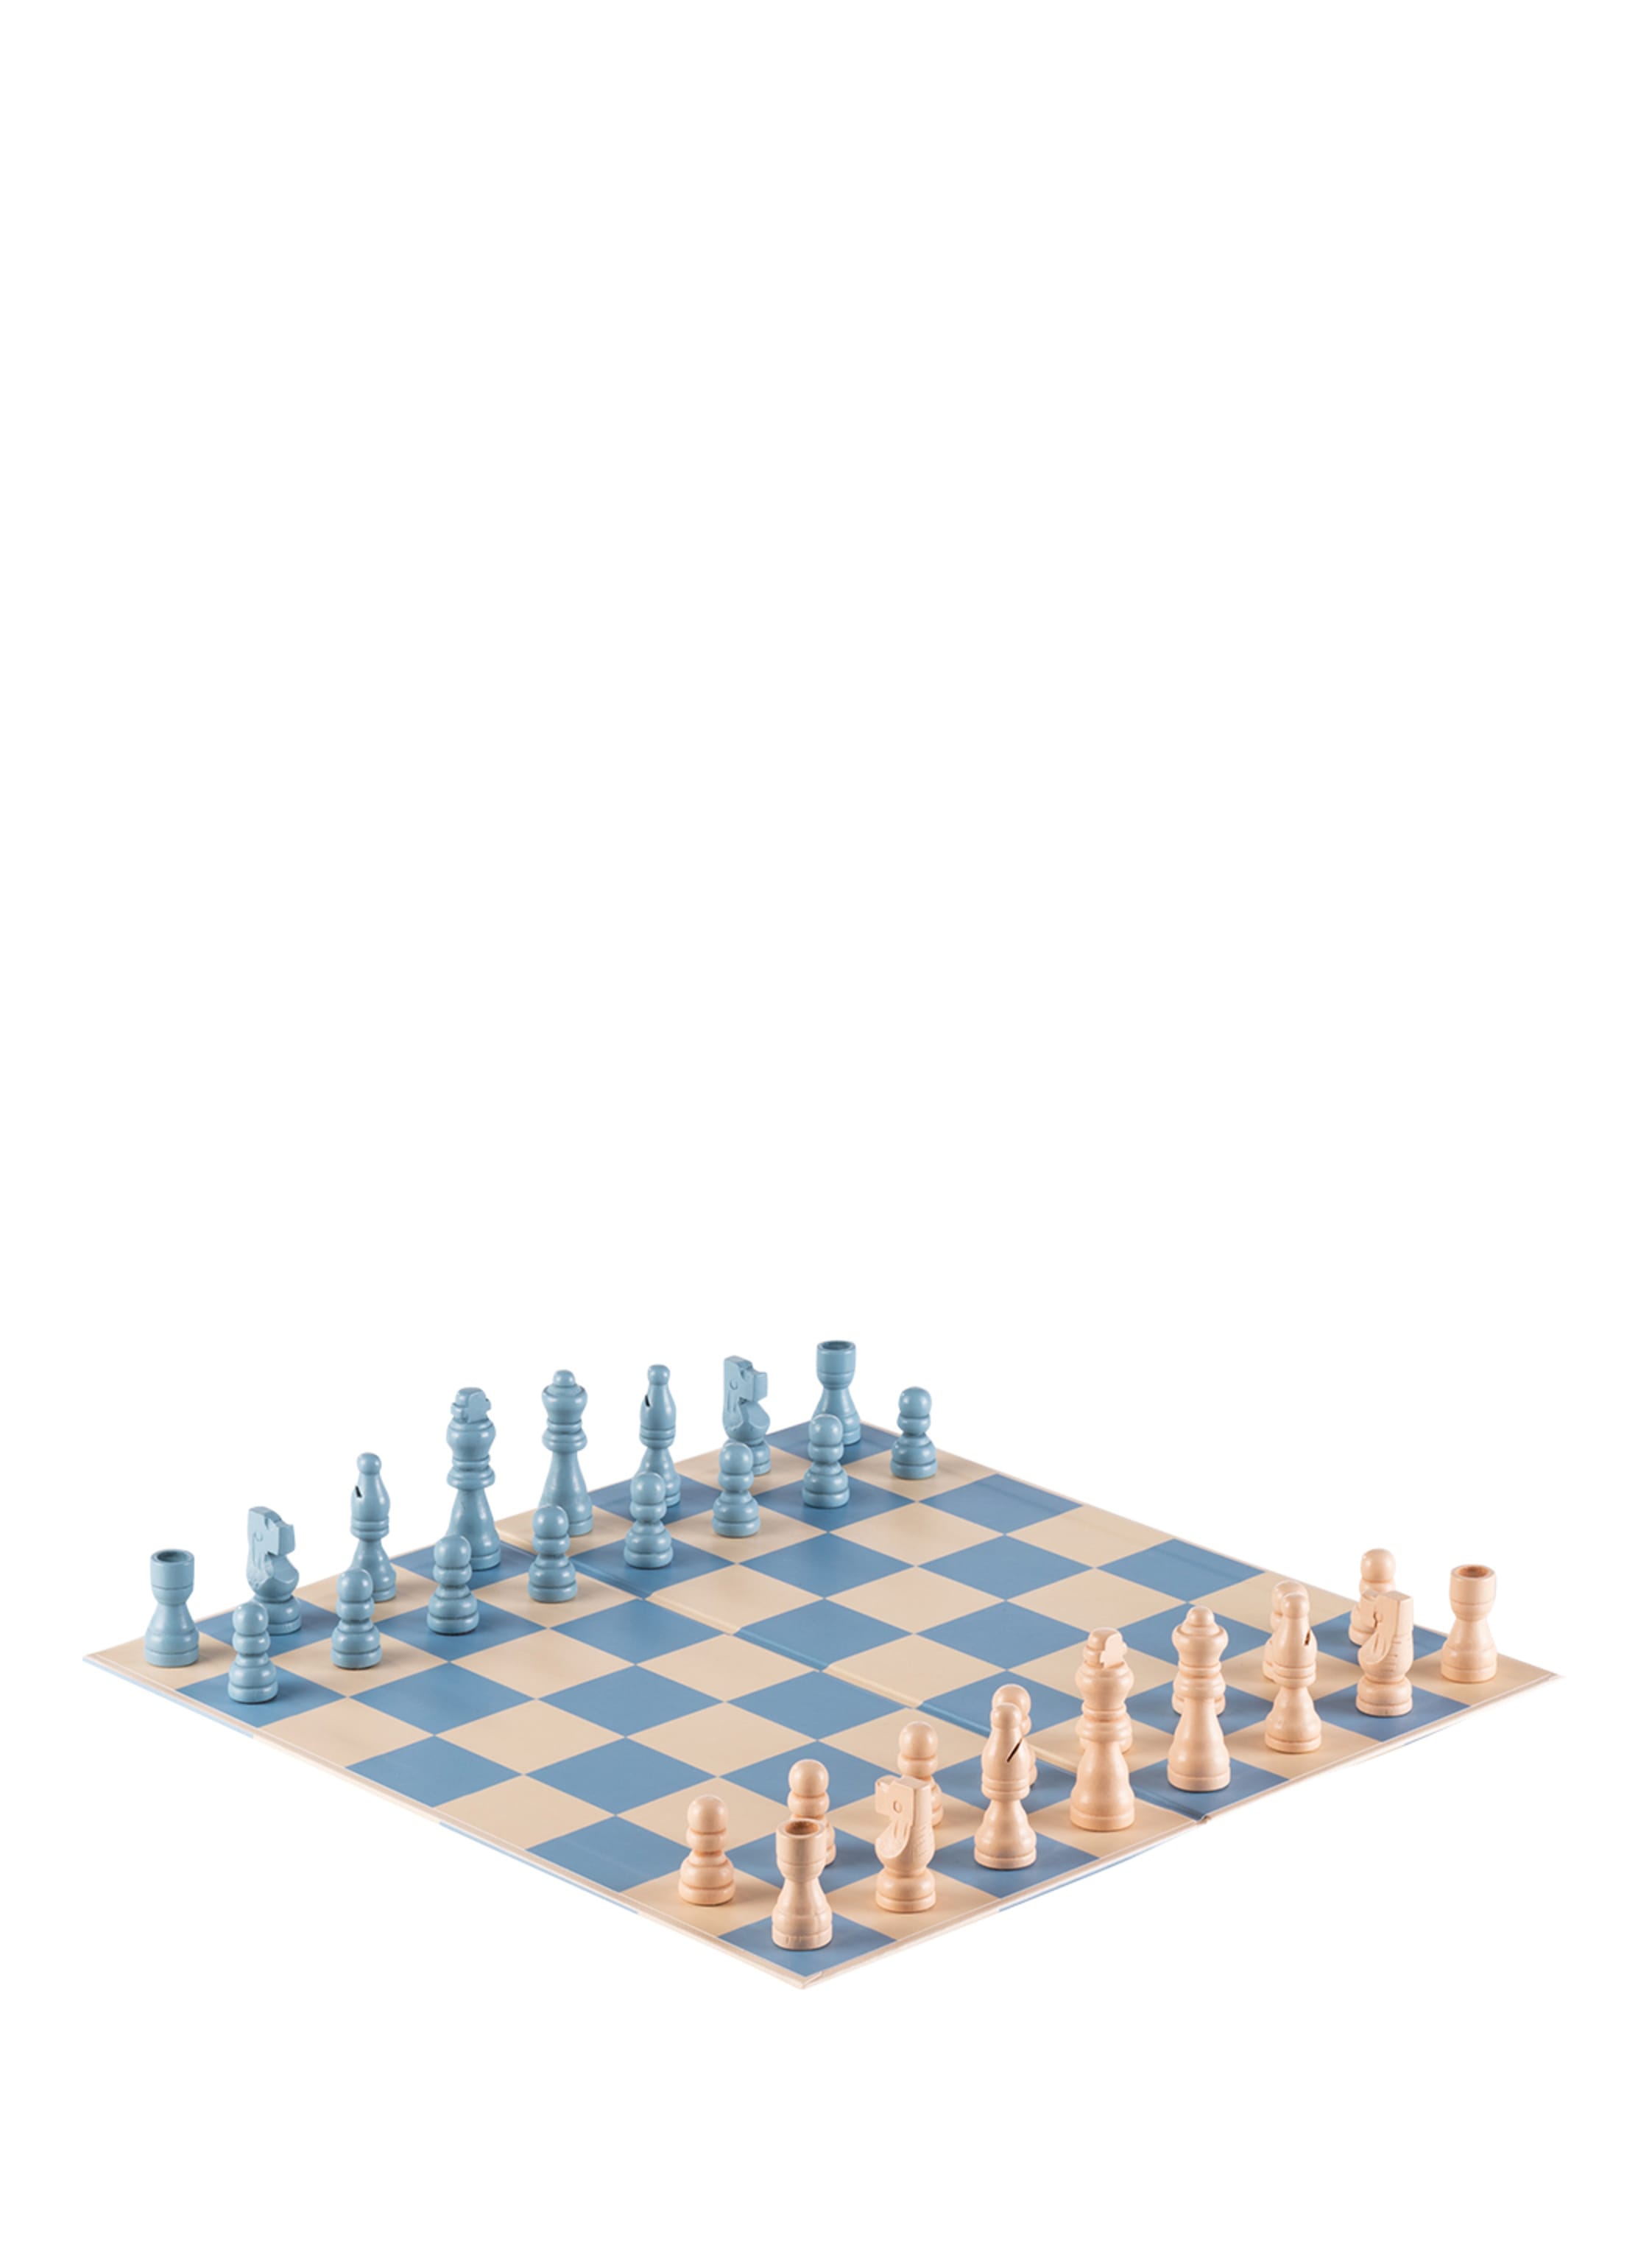 schach browsergame